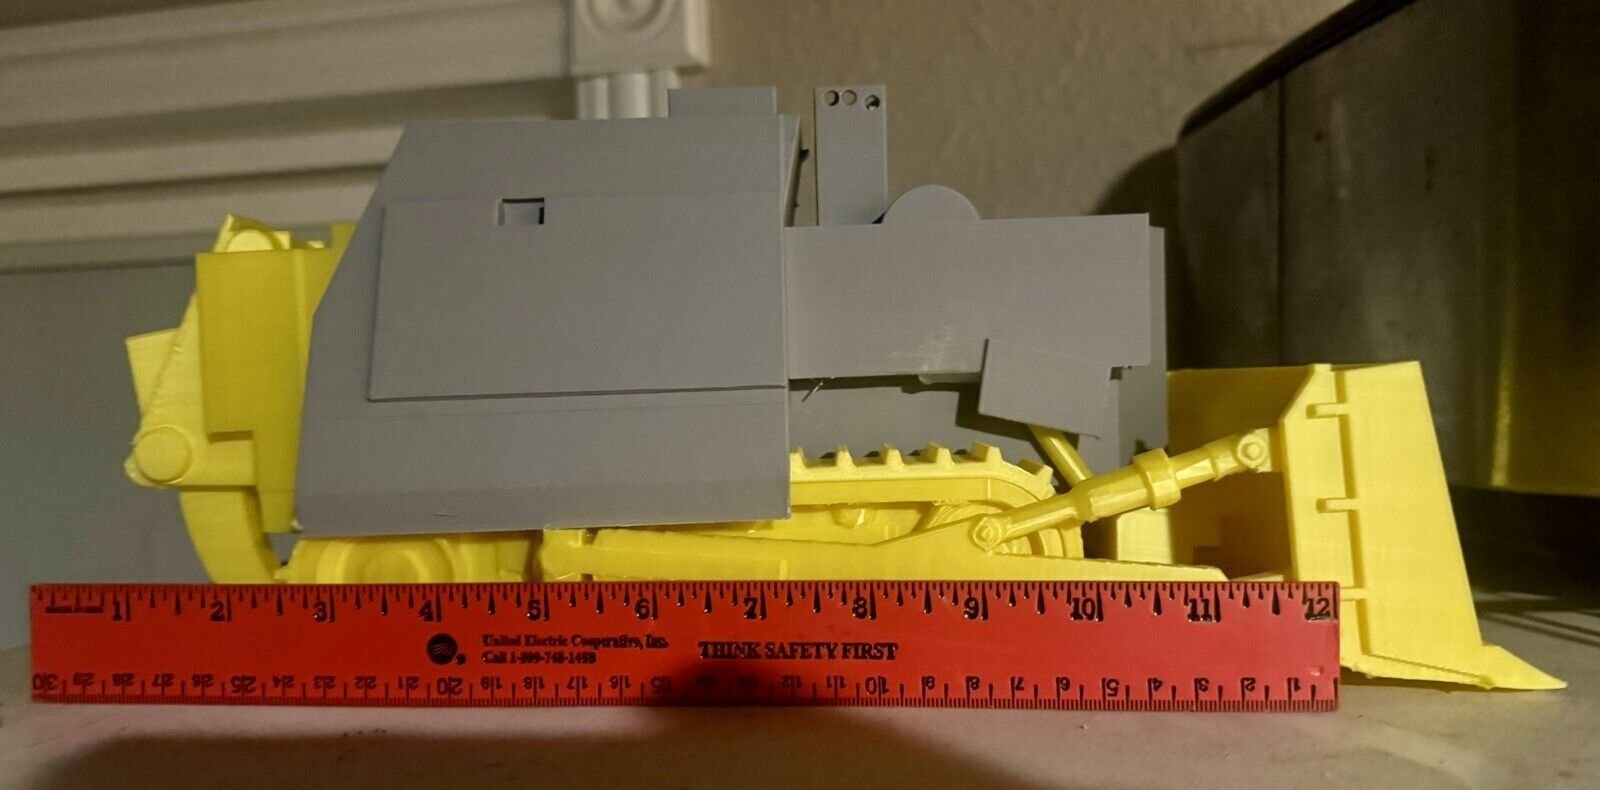 Killdozer Over 12” long - 3D printed